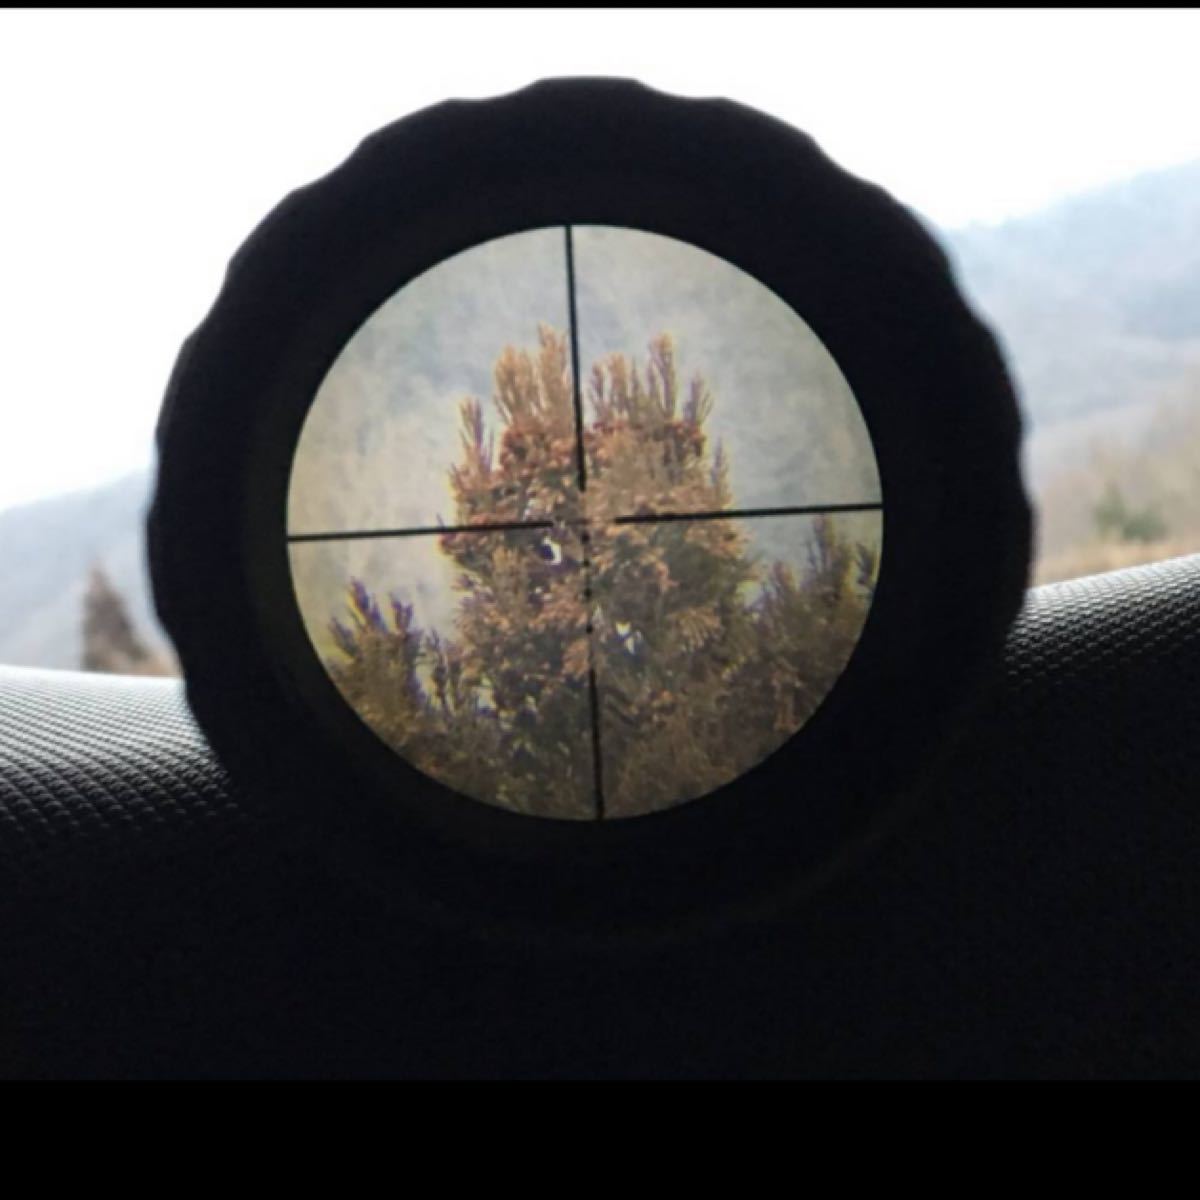 Bushnell ブッシュネル AR Optics 3-9x40 ライフルスコープ 箱付 スナイパー 猟銃 マウントリング レクテ